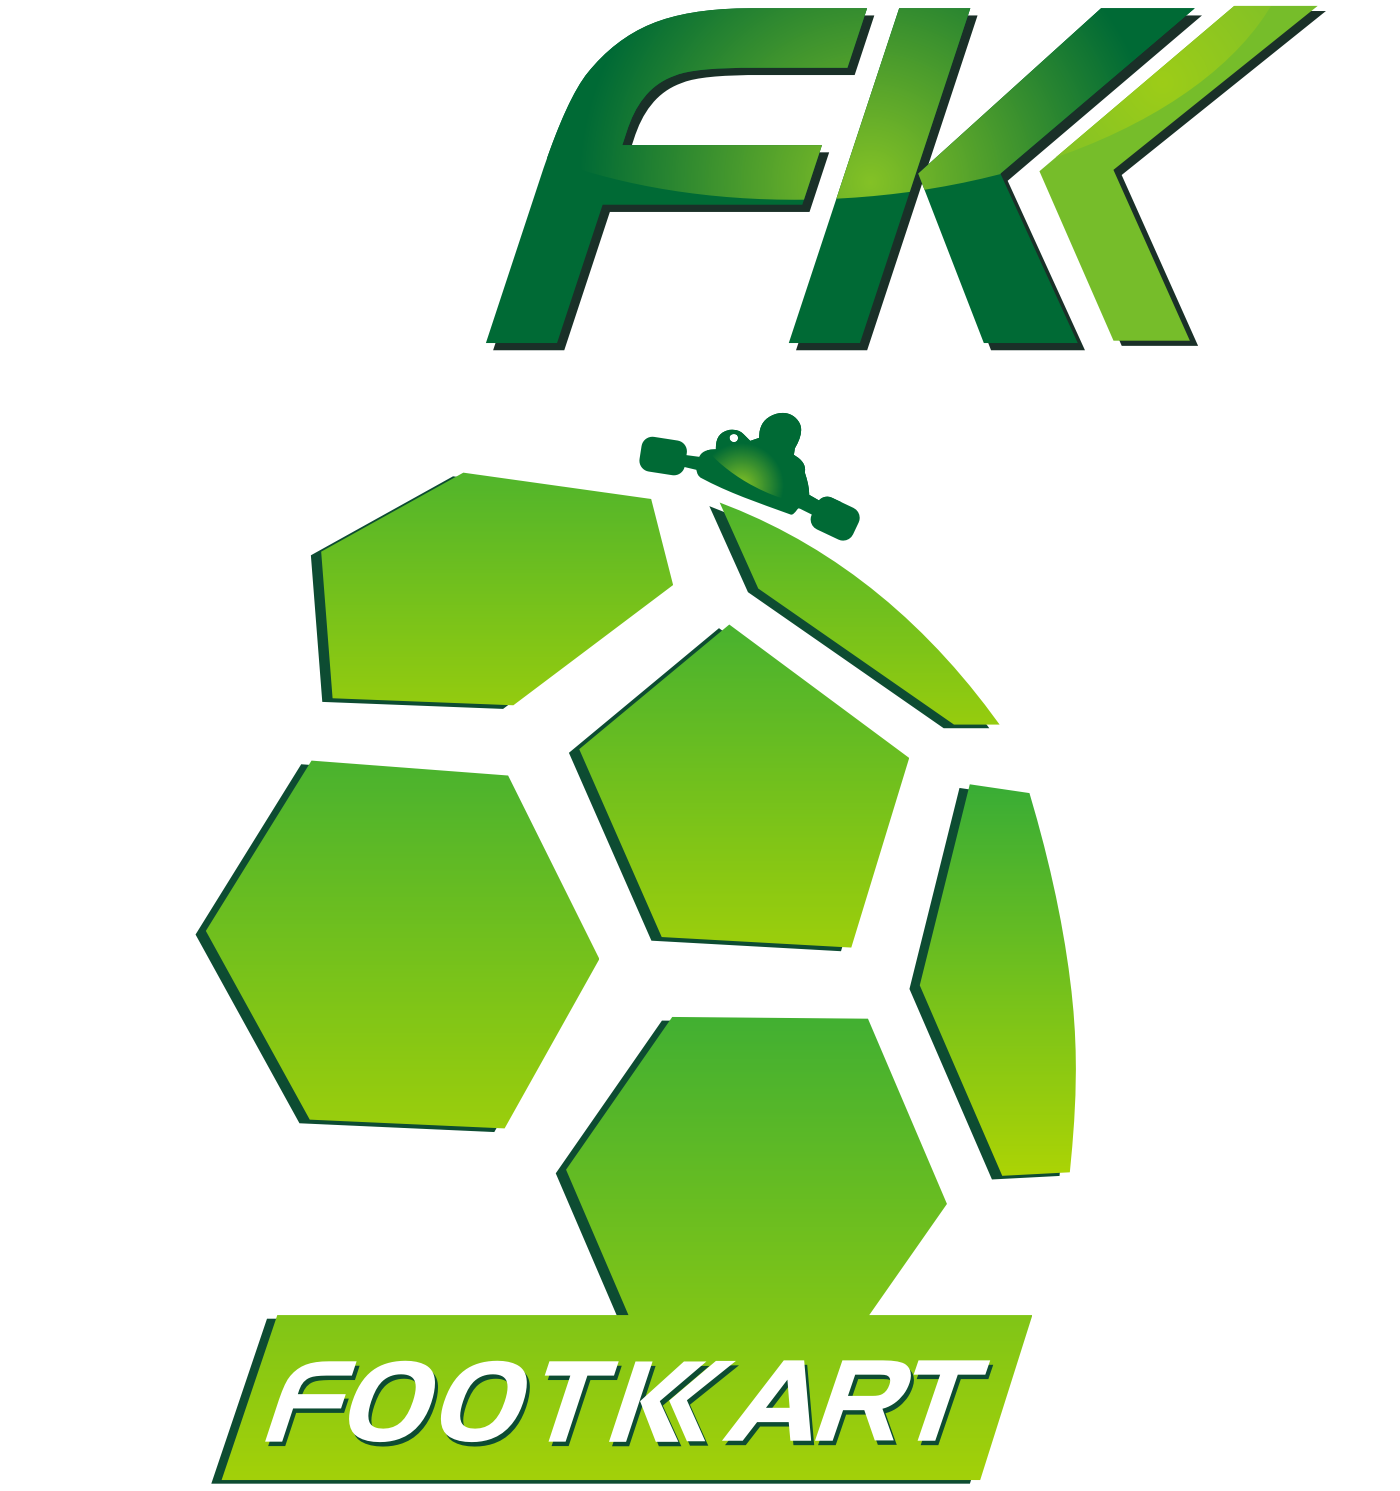 Footkart - Futebol Sub13